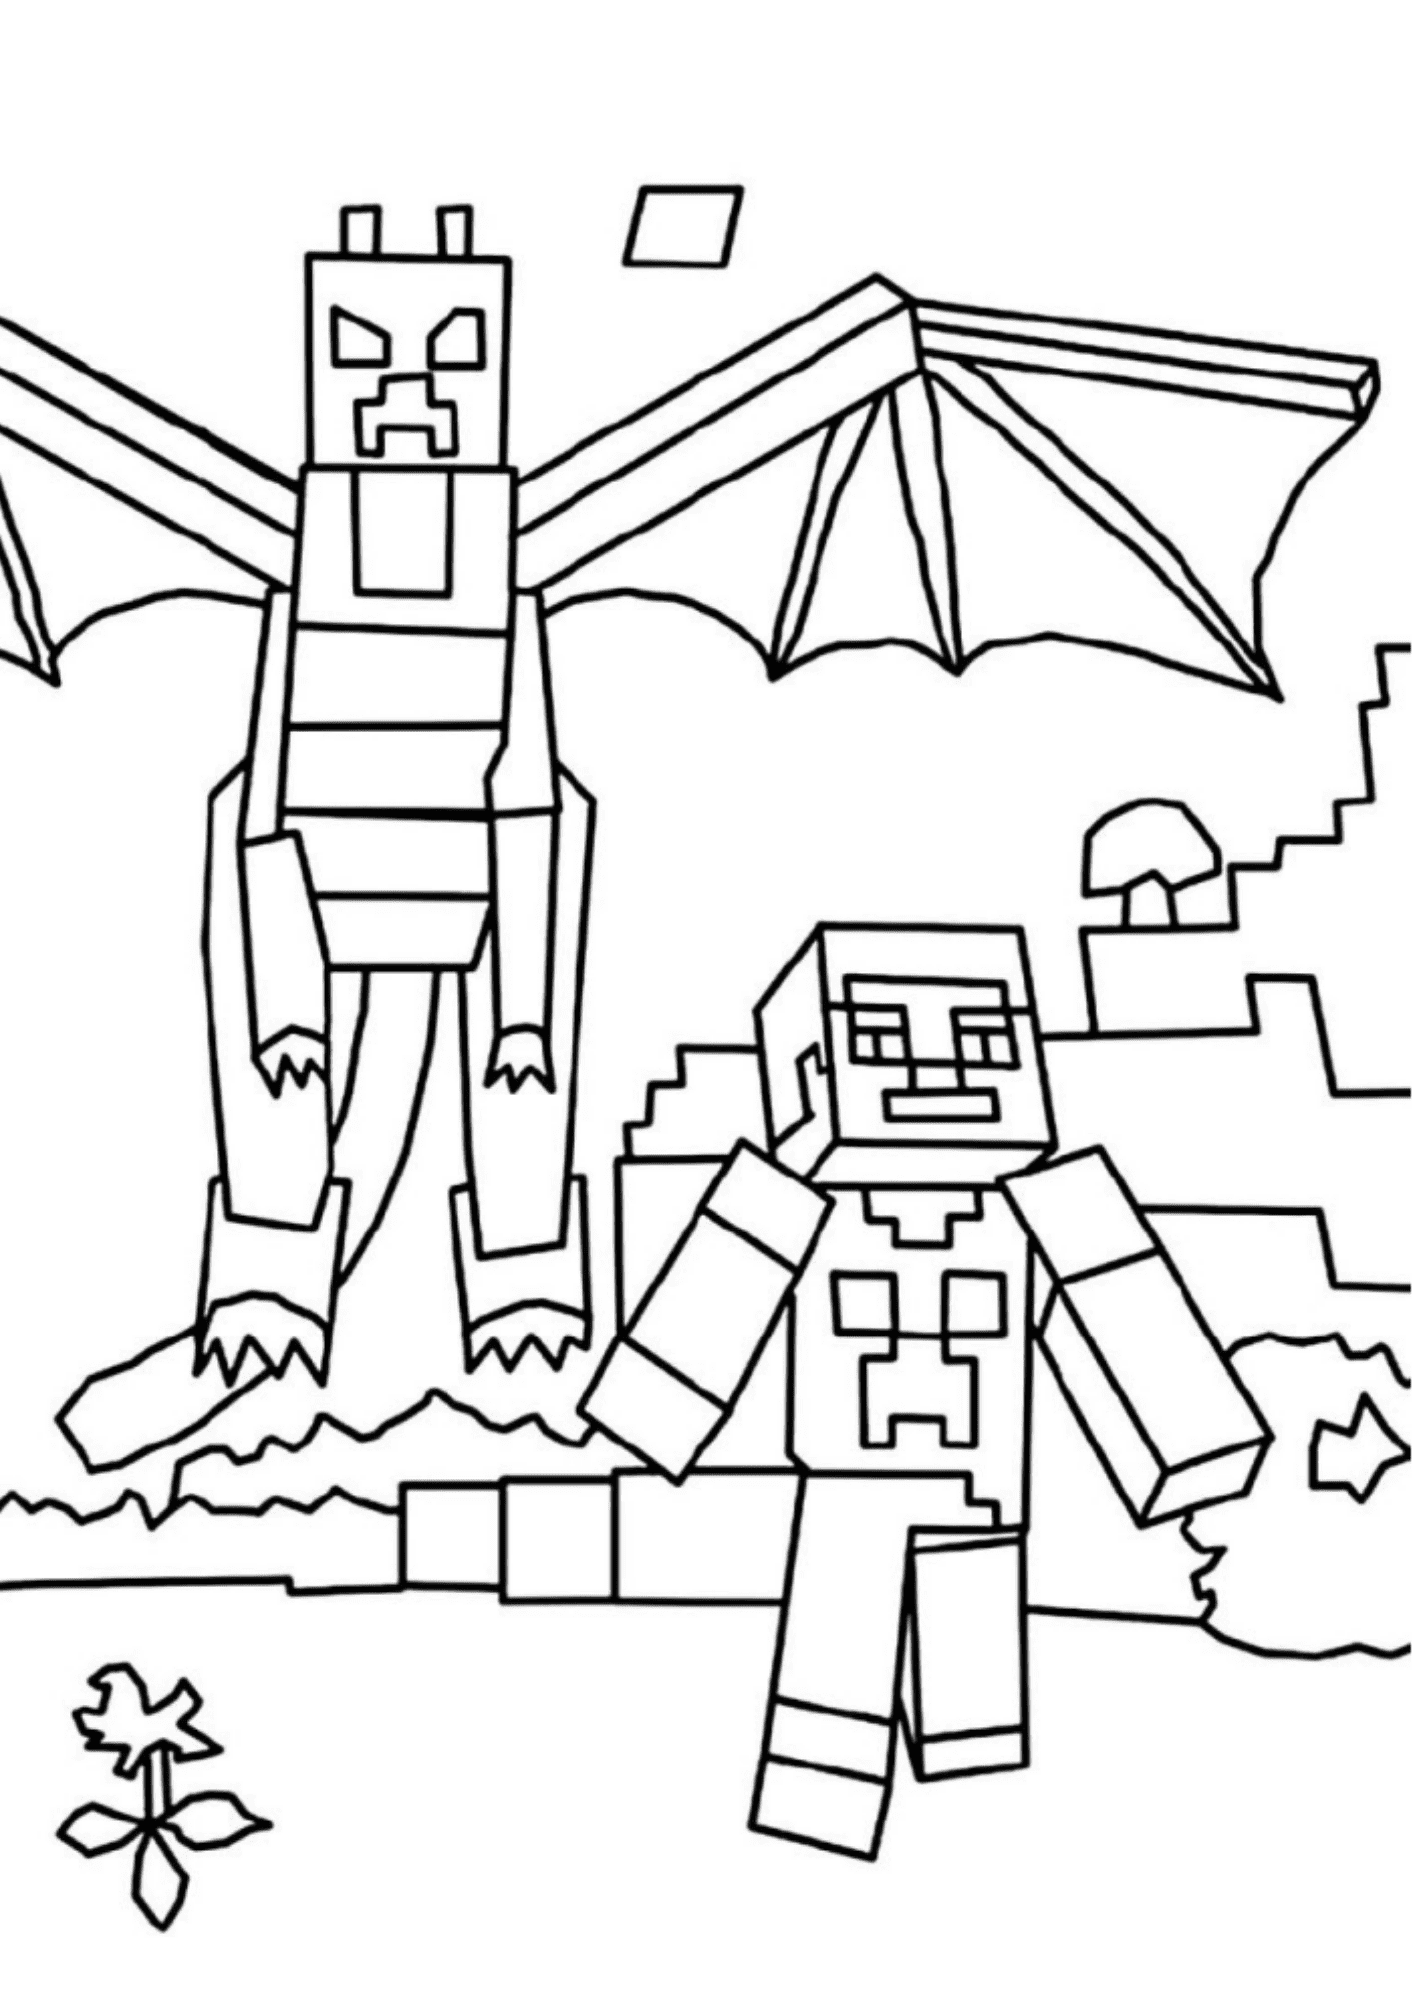 30+ Desenhos de Minecraft para imprimir e colorir - Como fazer em casa